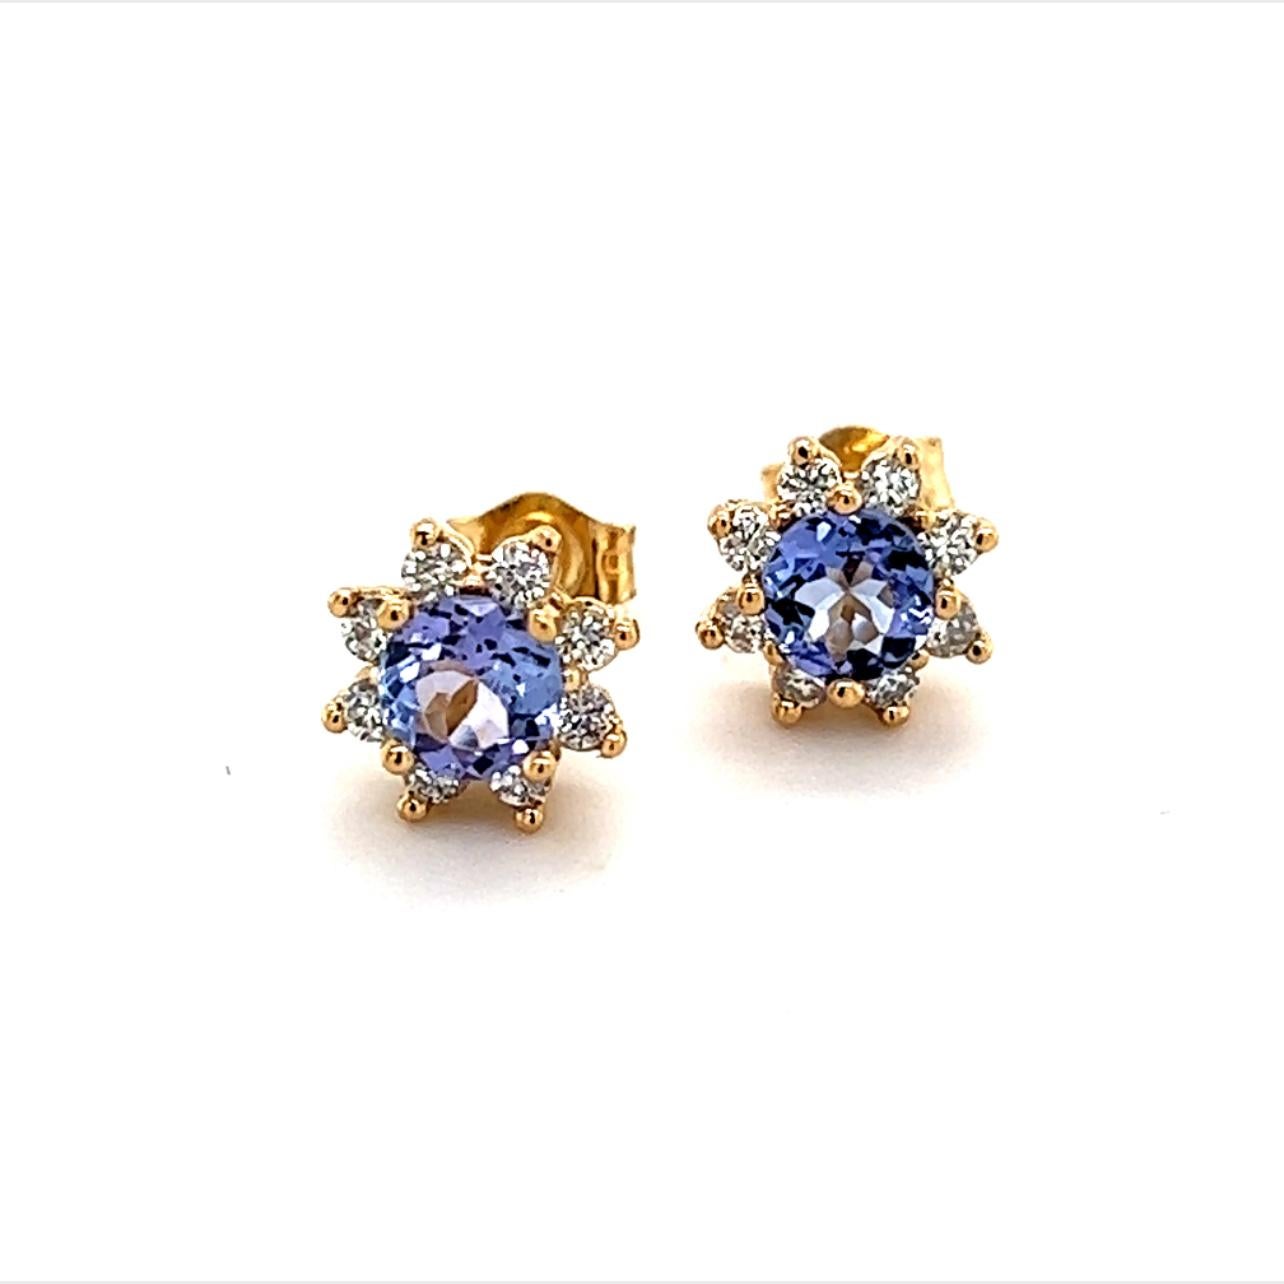 Boucles d'oreilles diamant saphir naturel en or 14k 1,0 TCW certifié 2 490 $ 210747

Ce beau bijou est conçu par Enrico Kassini !

Rien ne dit mieux 